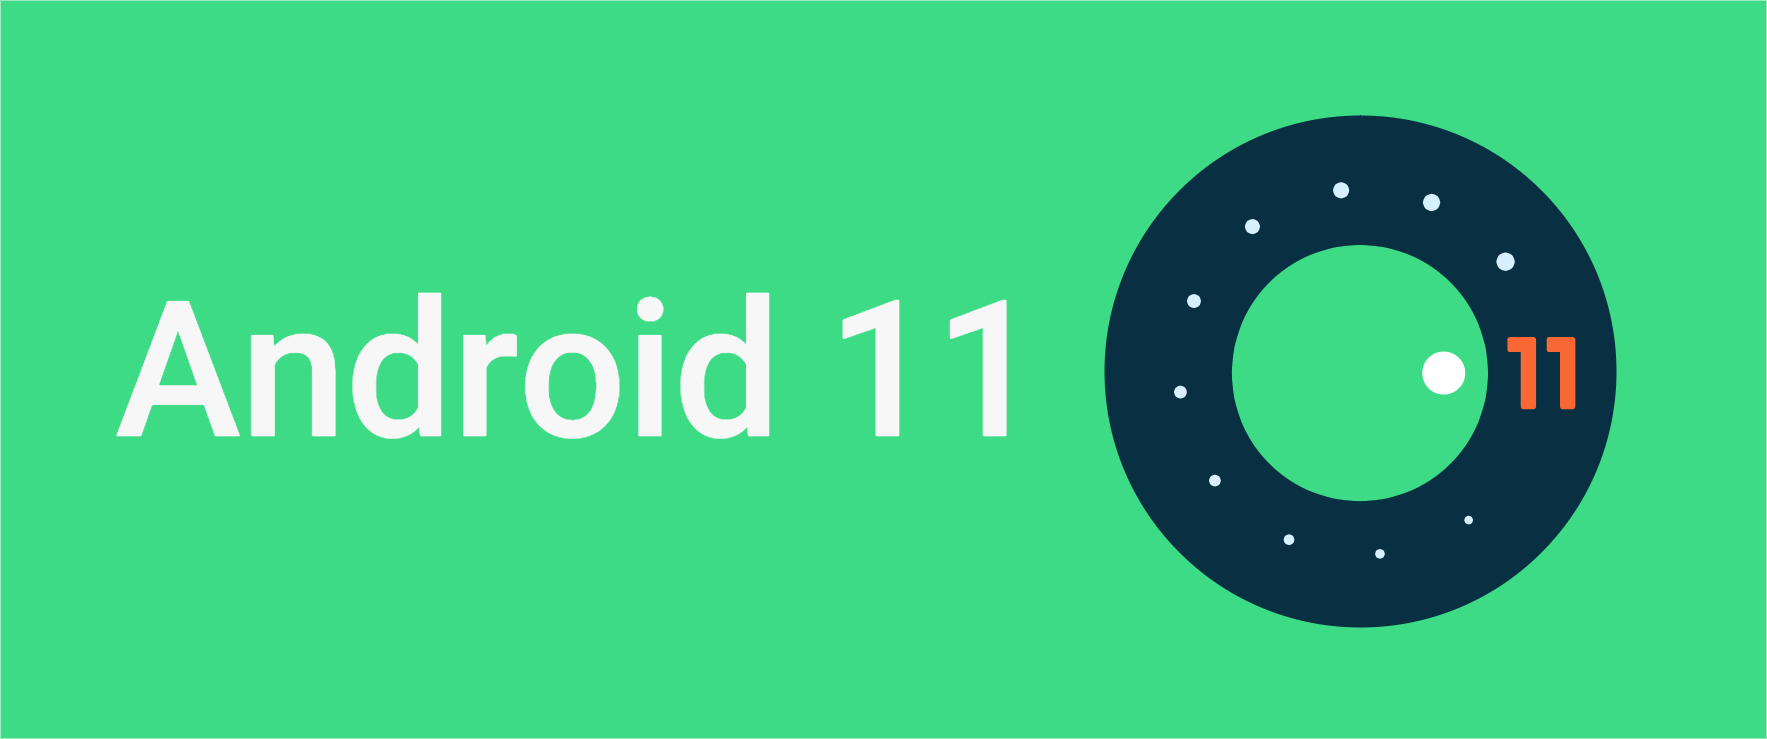 تحديث أندرويد 11 يصل إلى أجهزة Galaxy Note 10